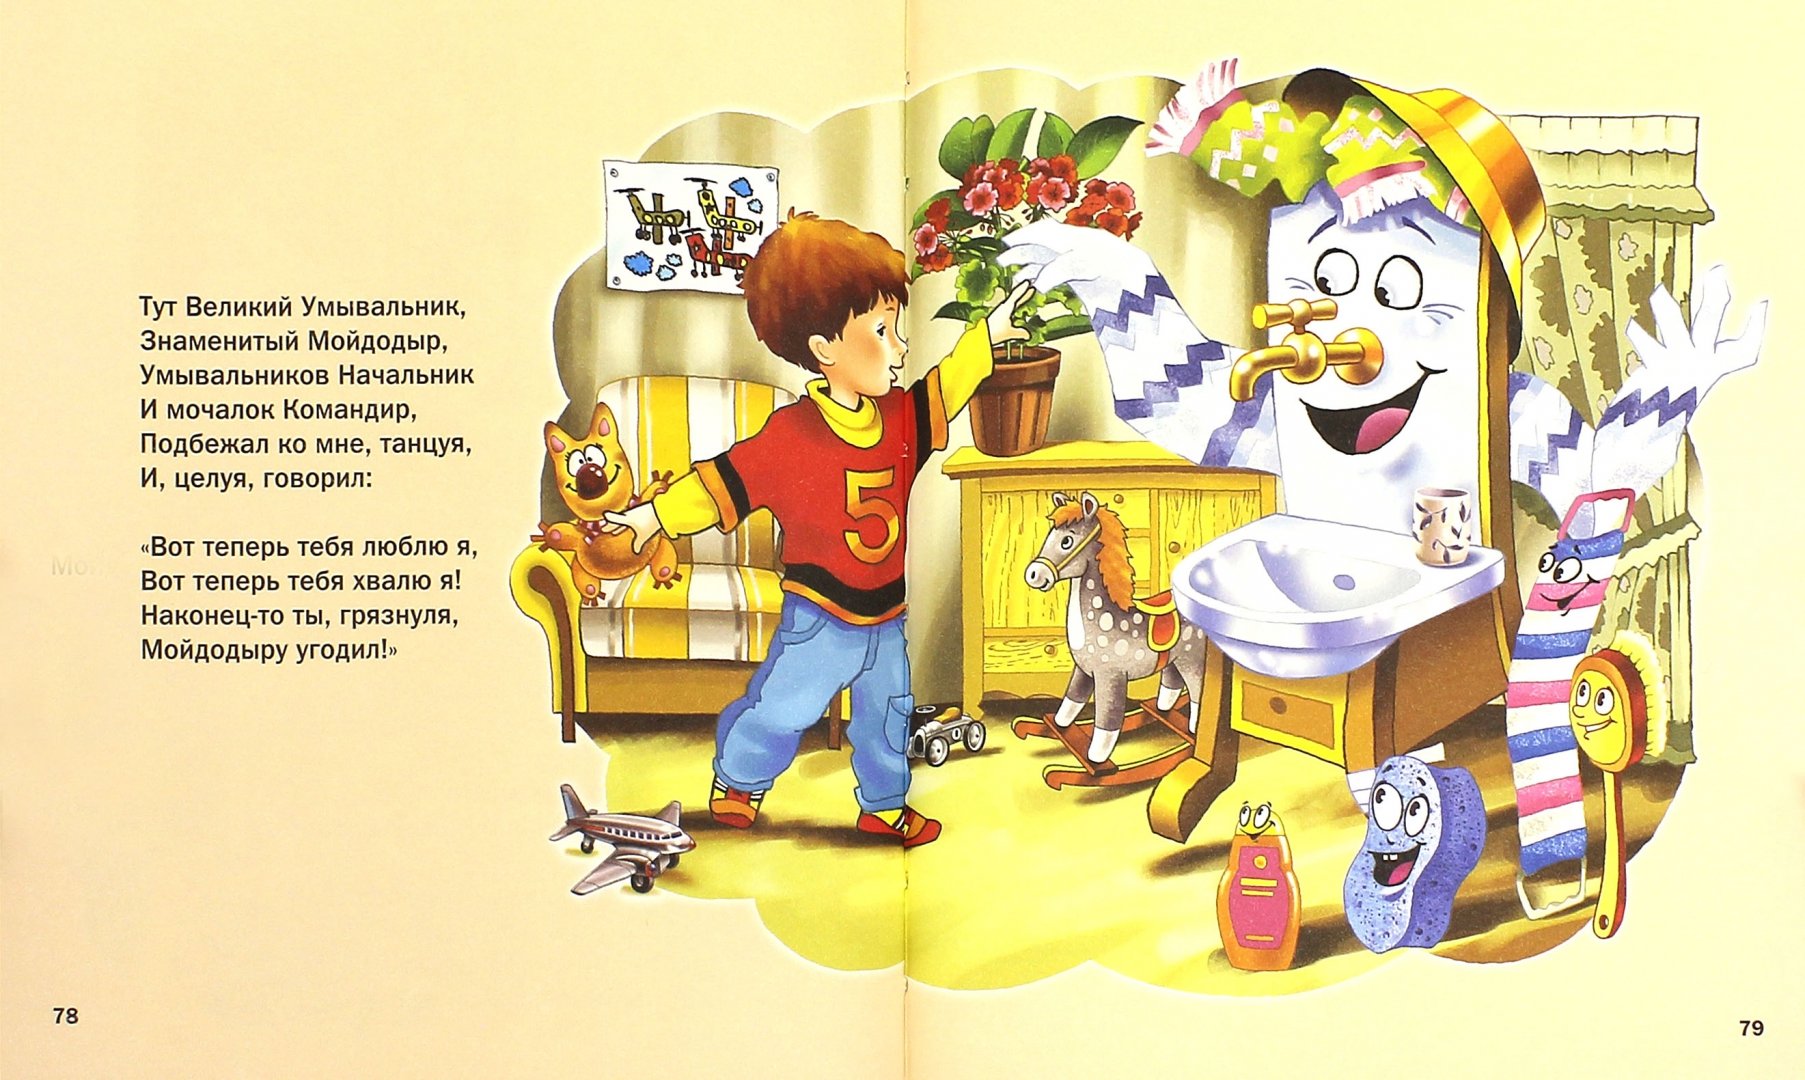 Иллюстрации к книгам Чуковского